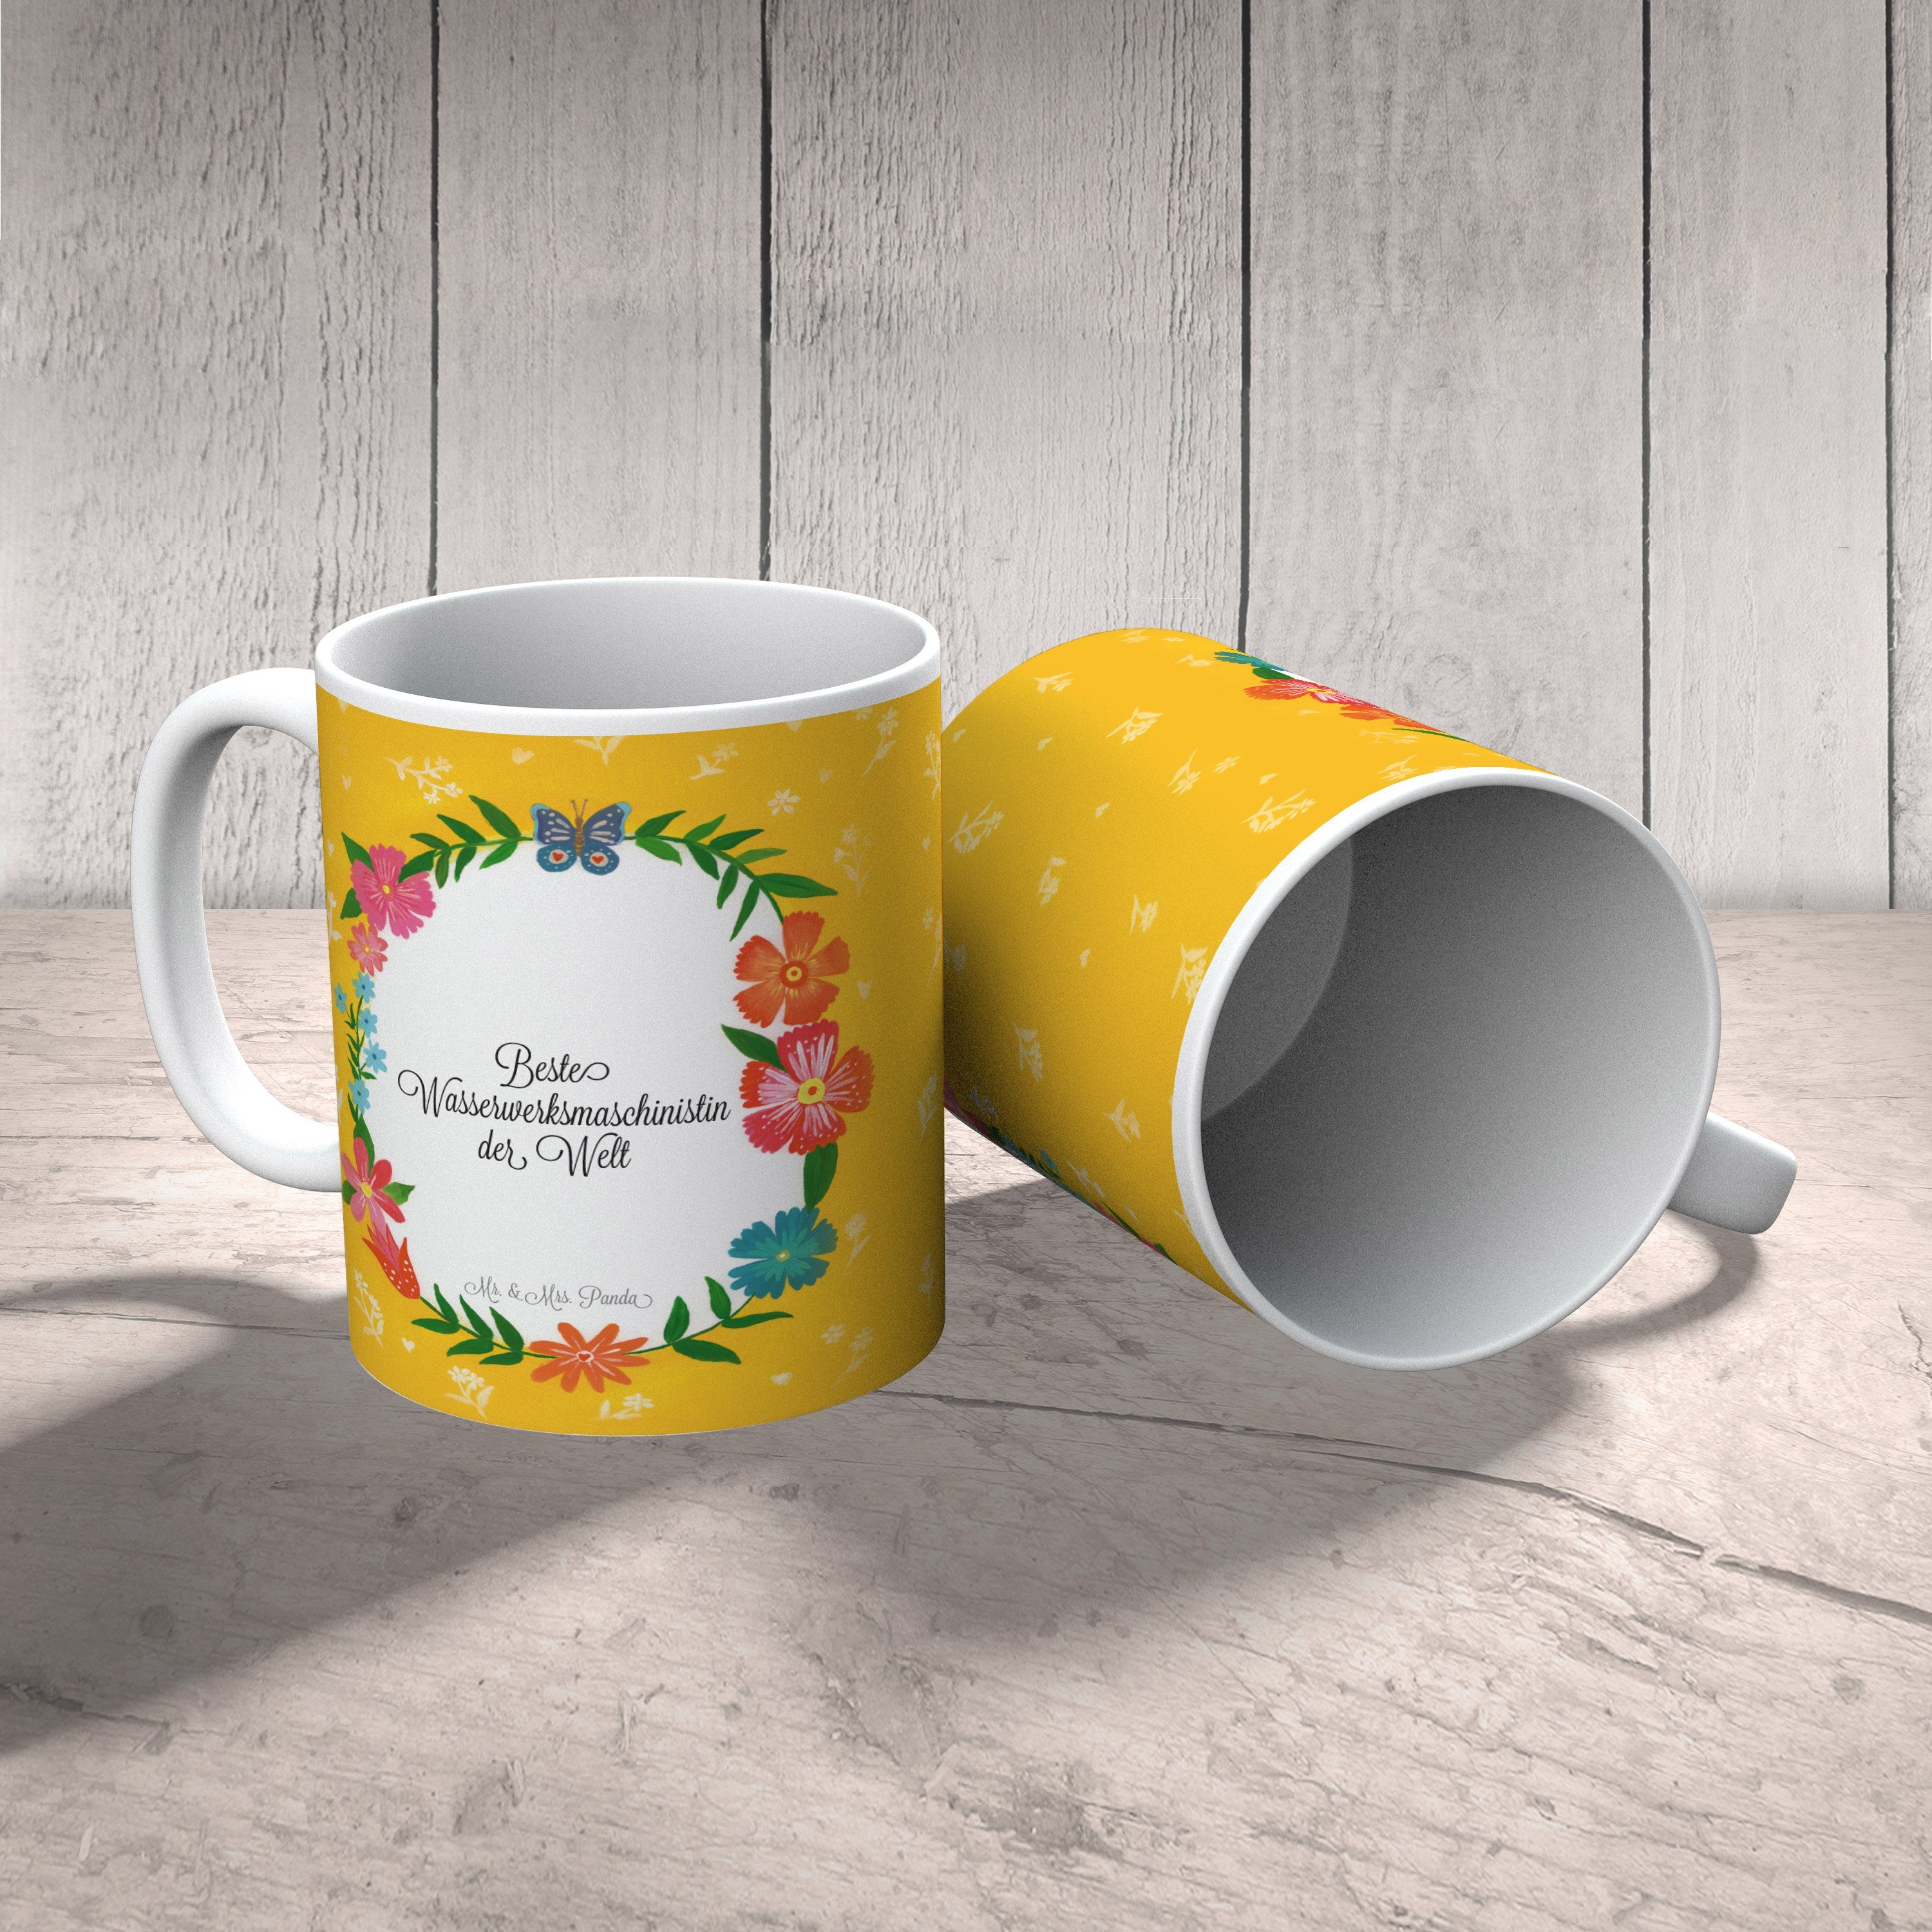 Mr. & Geschenk, Wasserwerksmaschinistin Panda Kaffeebecher, Mrs. Dipl, Tasse Sprüche, Tasse - Keramik